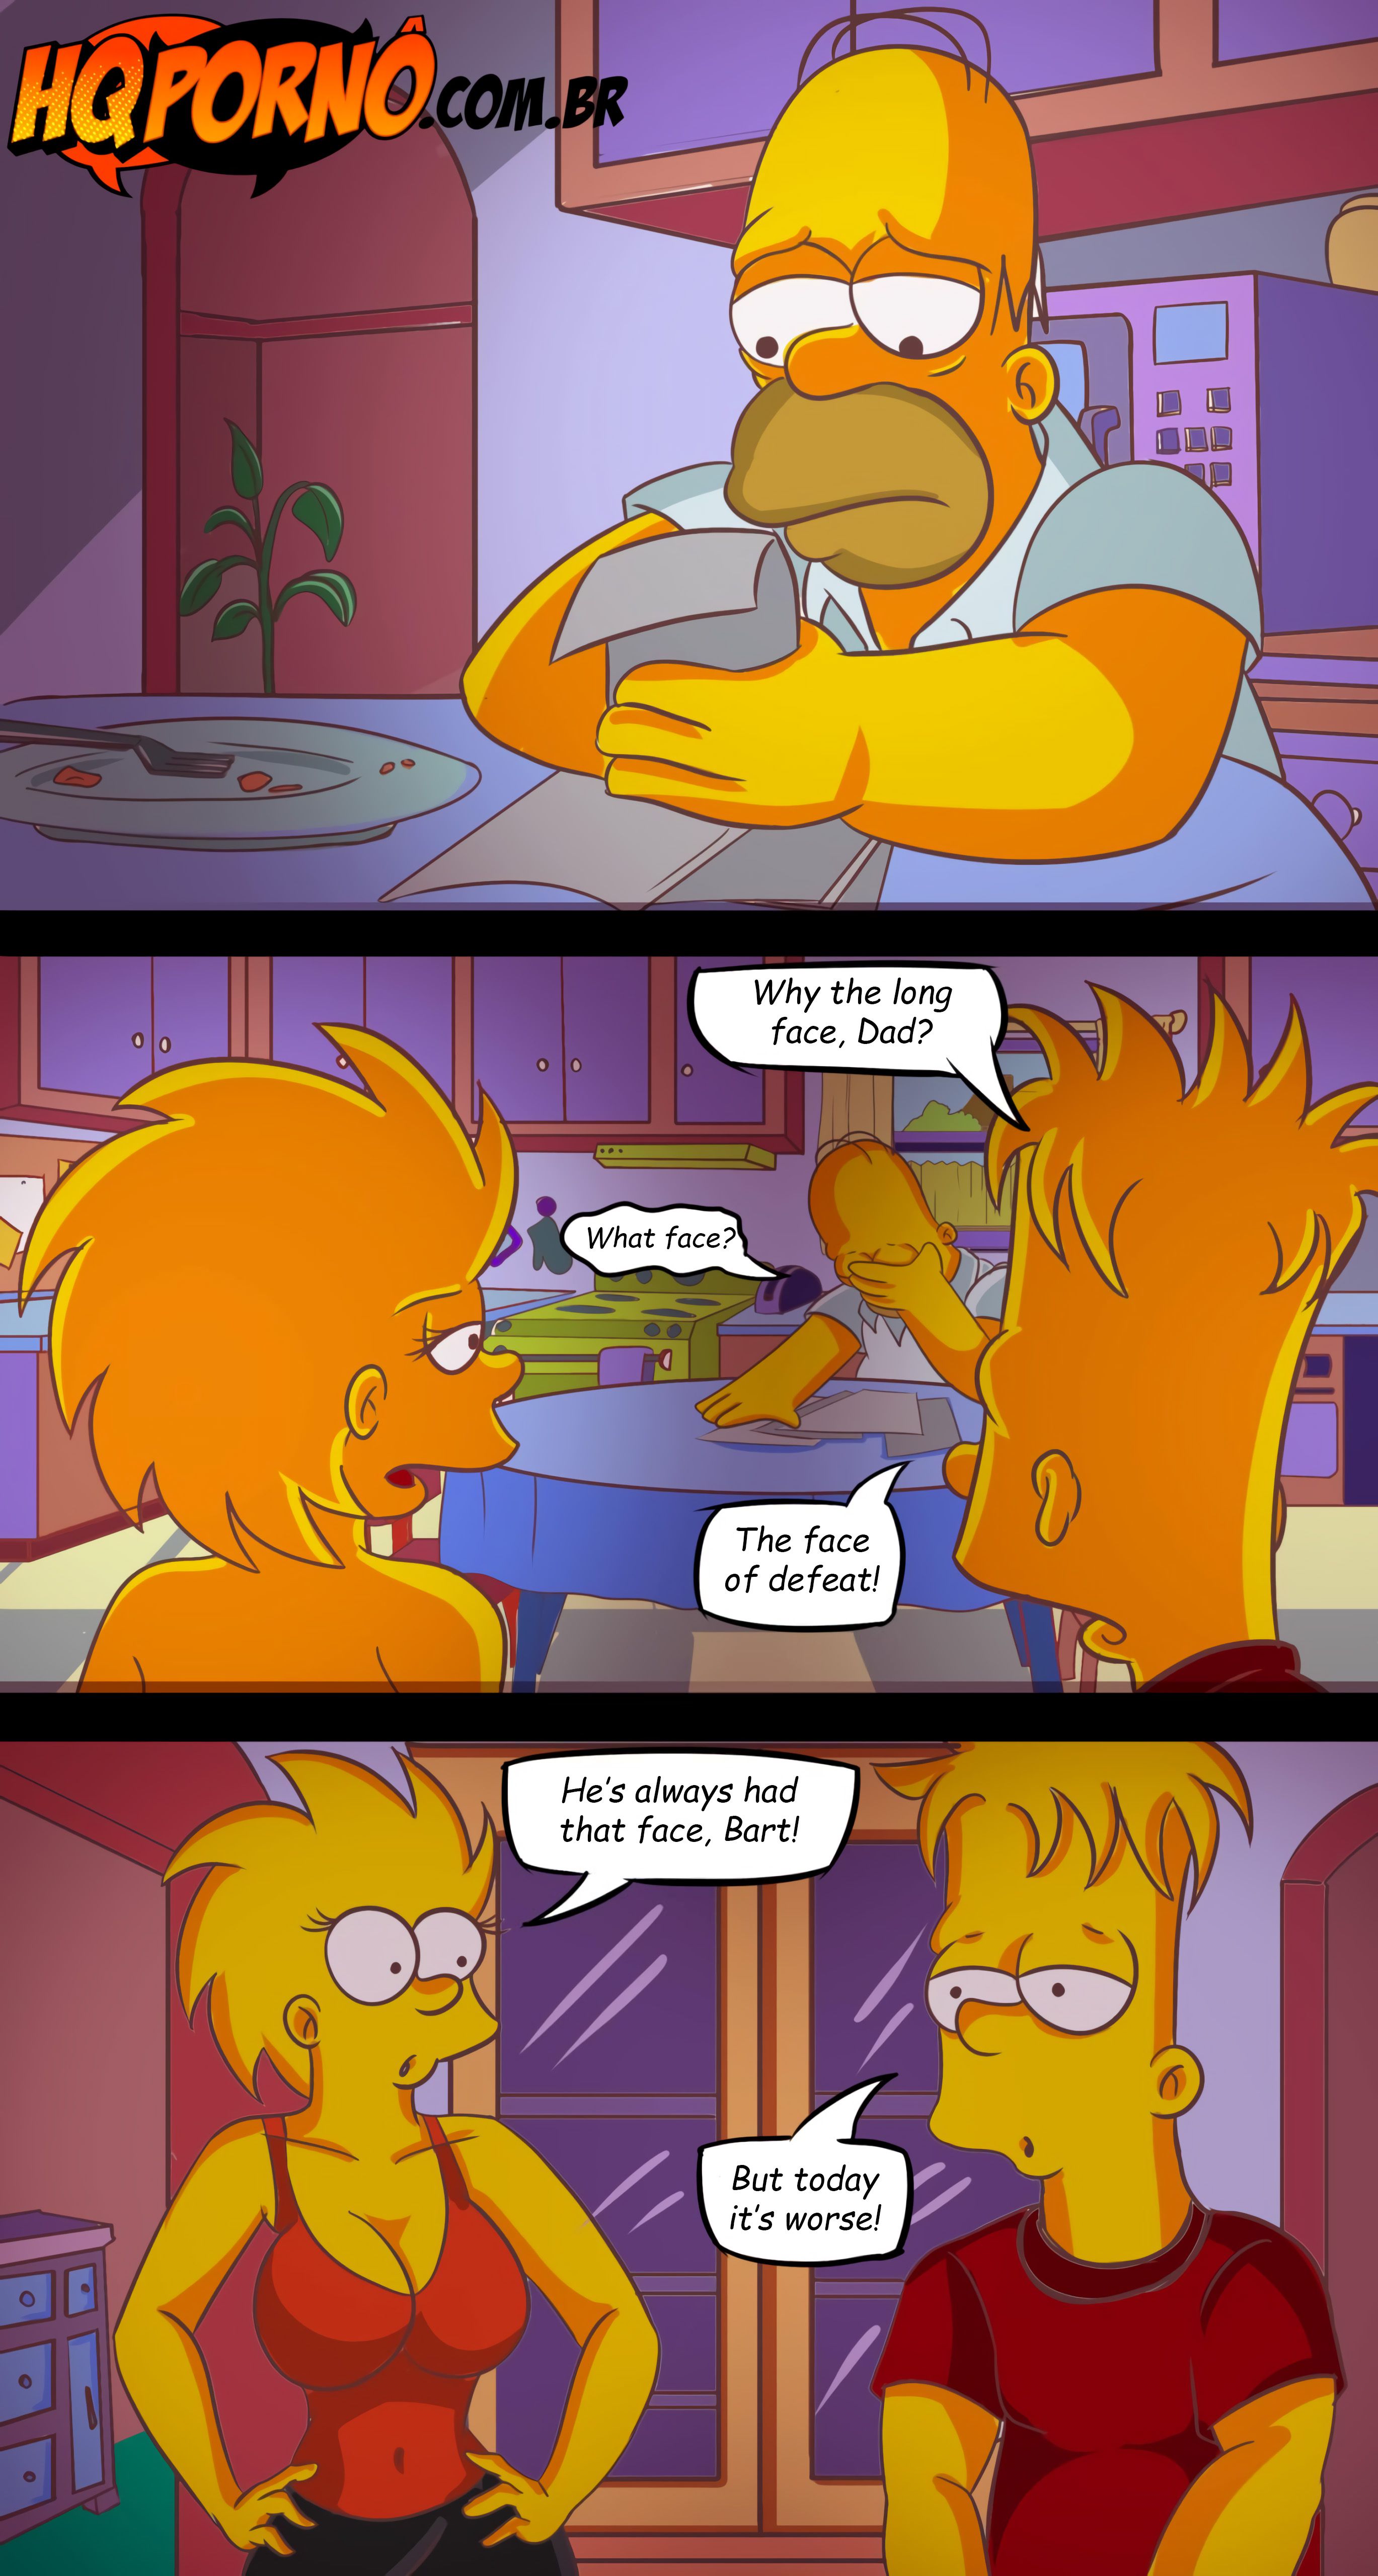 Simpsons Lisa Porn 2 Boys - OS Simpsons (The Simpsons) [HQPorno.com.br] - 3 . OS Simpsons - Lisa The  Slut - Chapter 3 (The Simpsons) [HQPorno.com.br] - AllPornComic